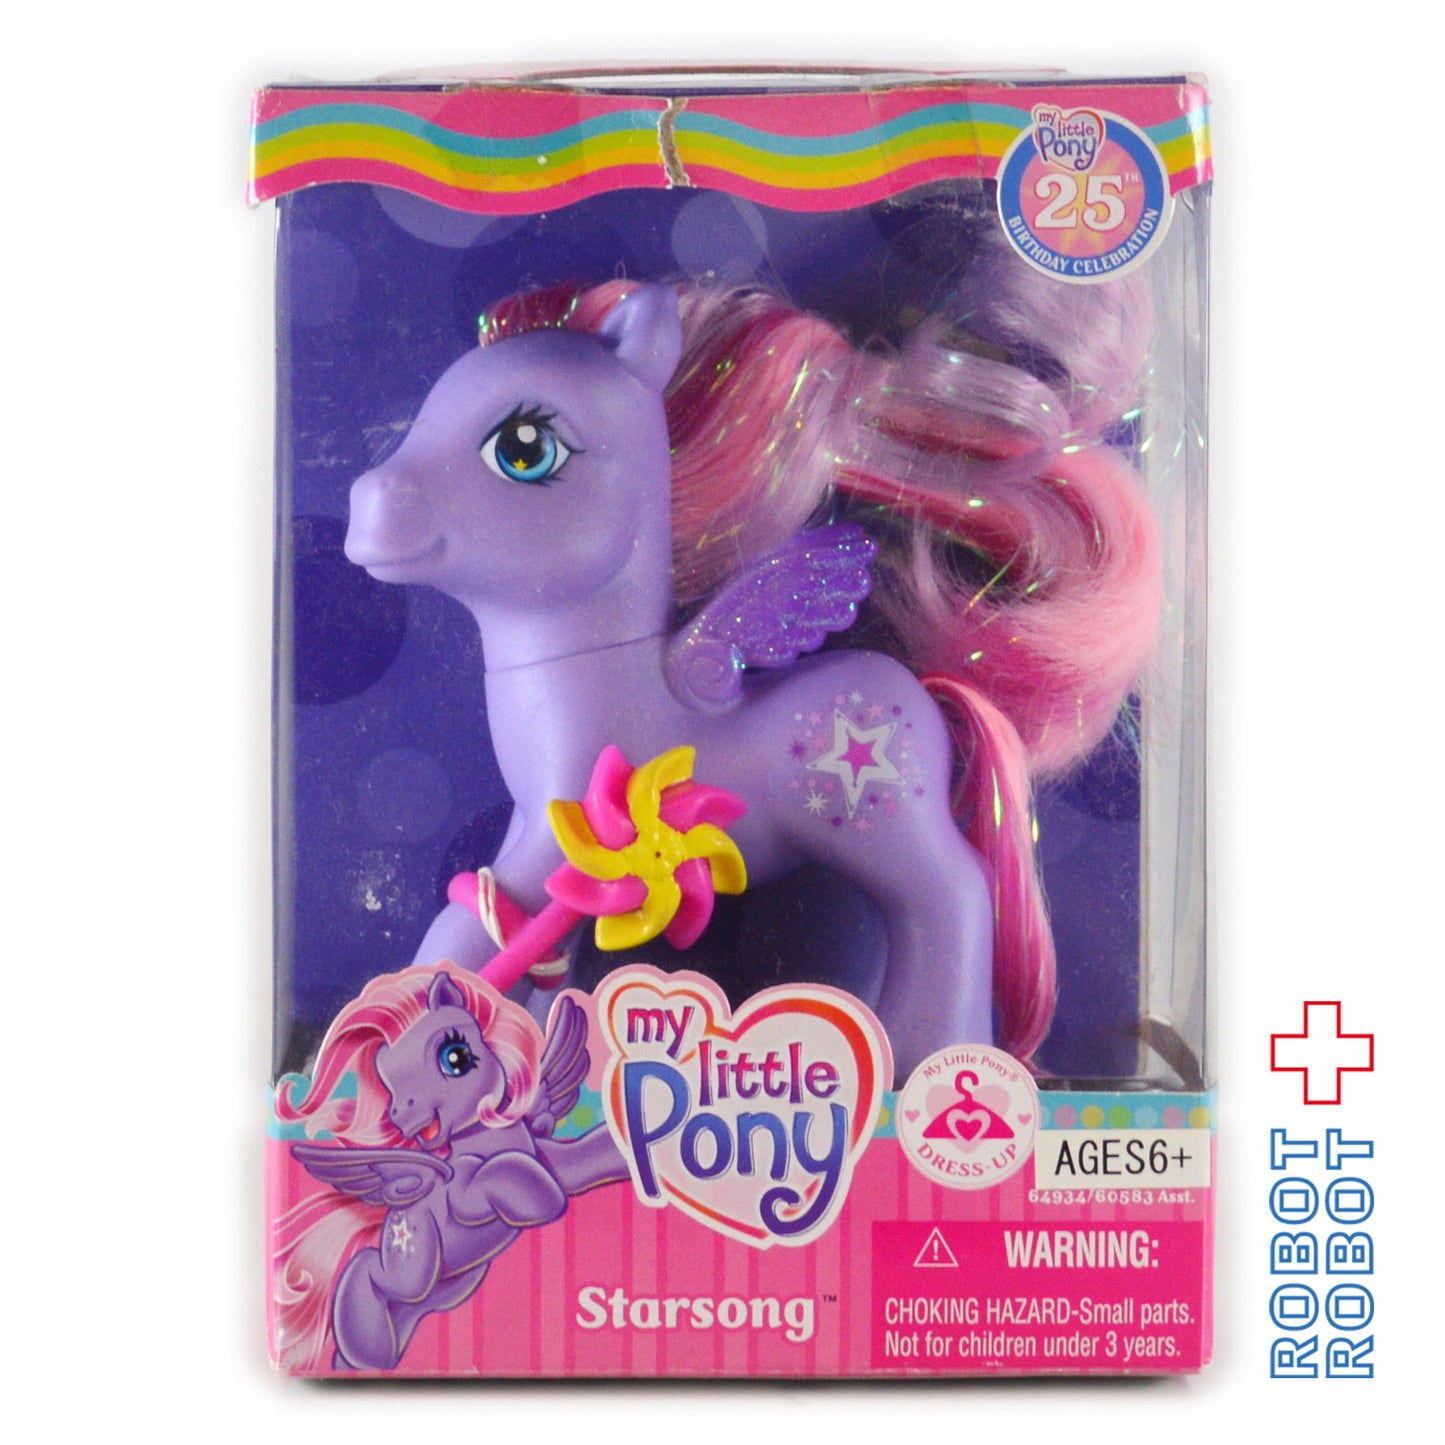 My Little Pony G3 25th Birthday Celebration STARSONG